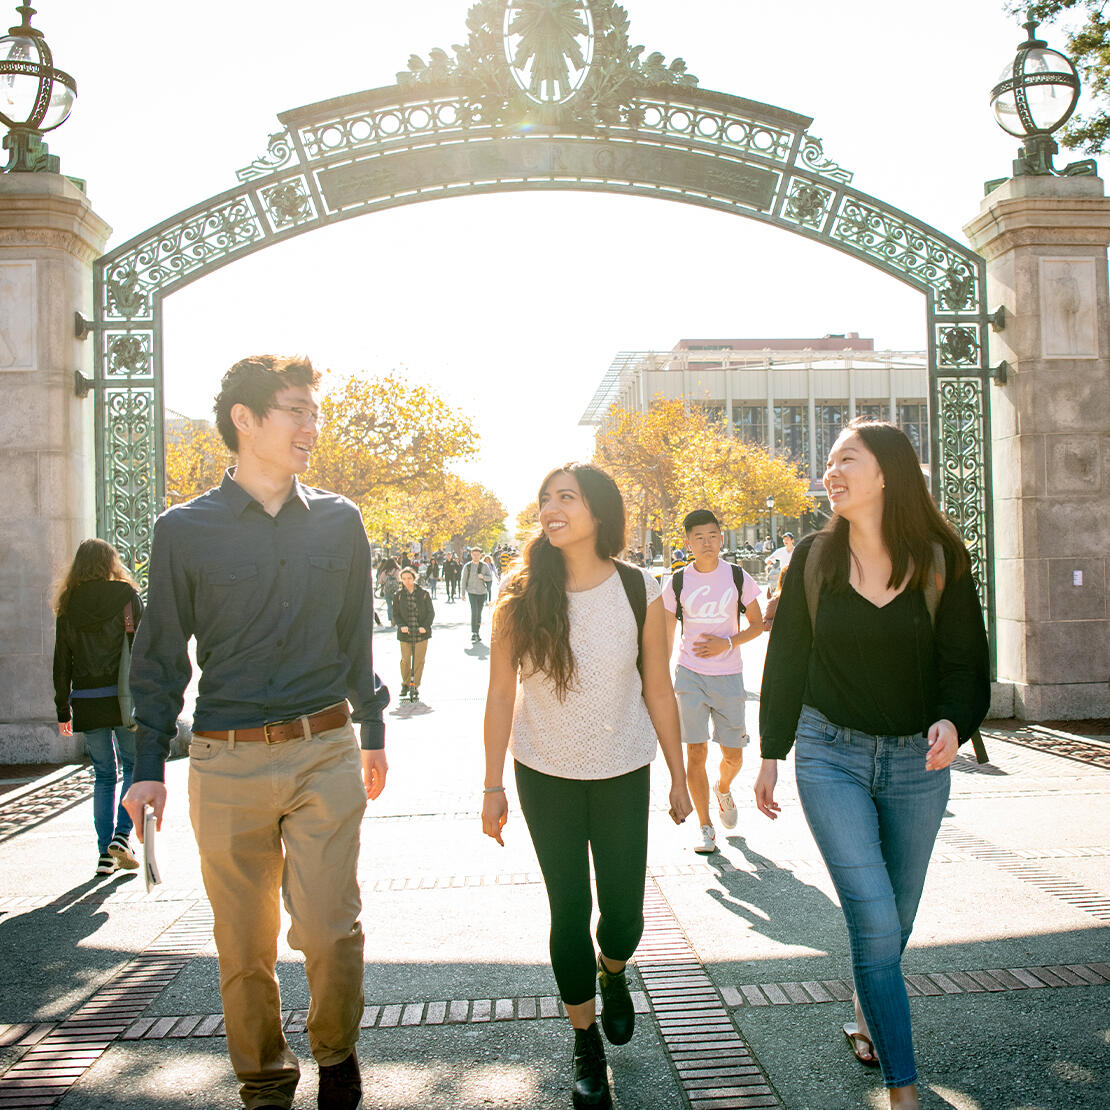 UC Berkeley students walking through Sather Gate.